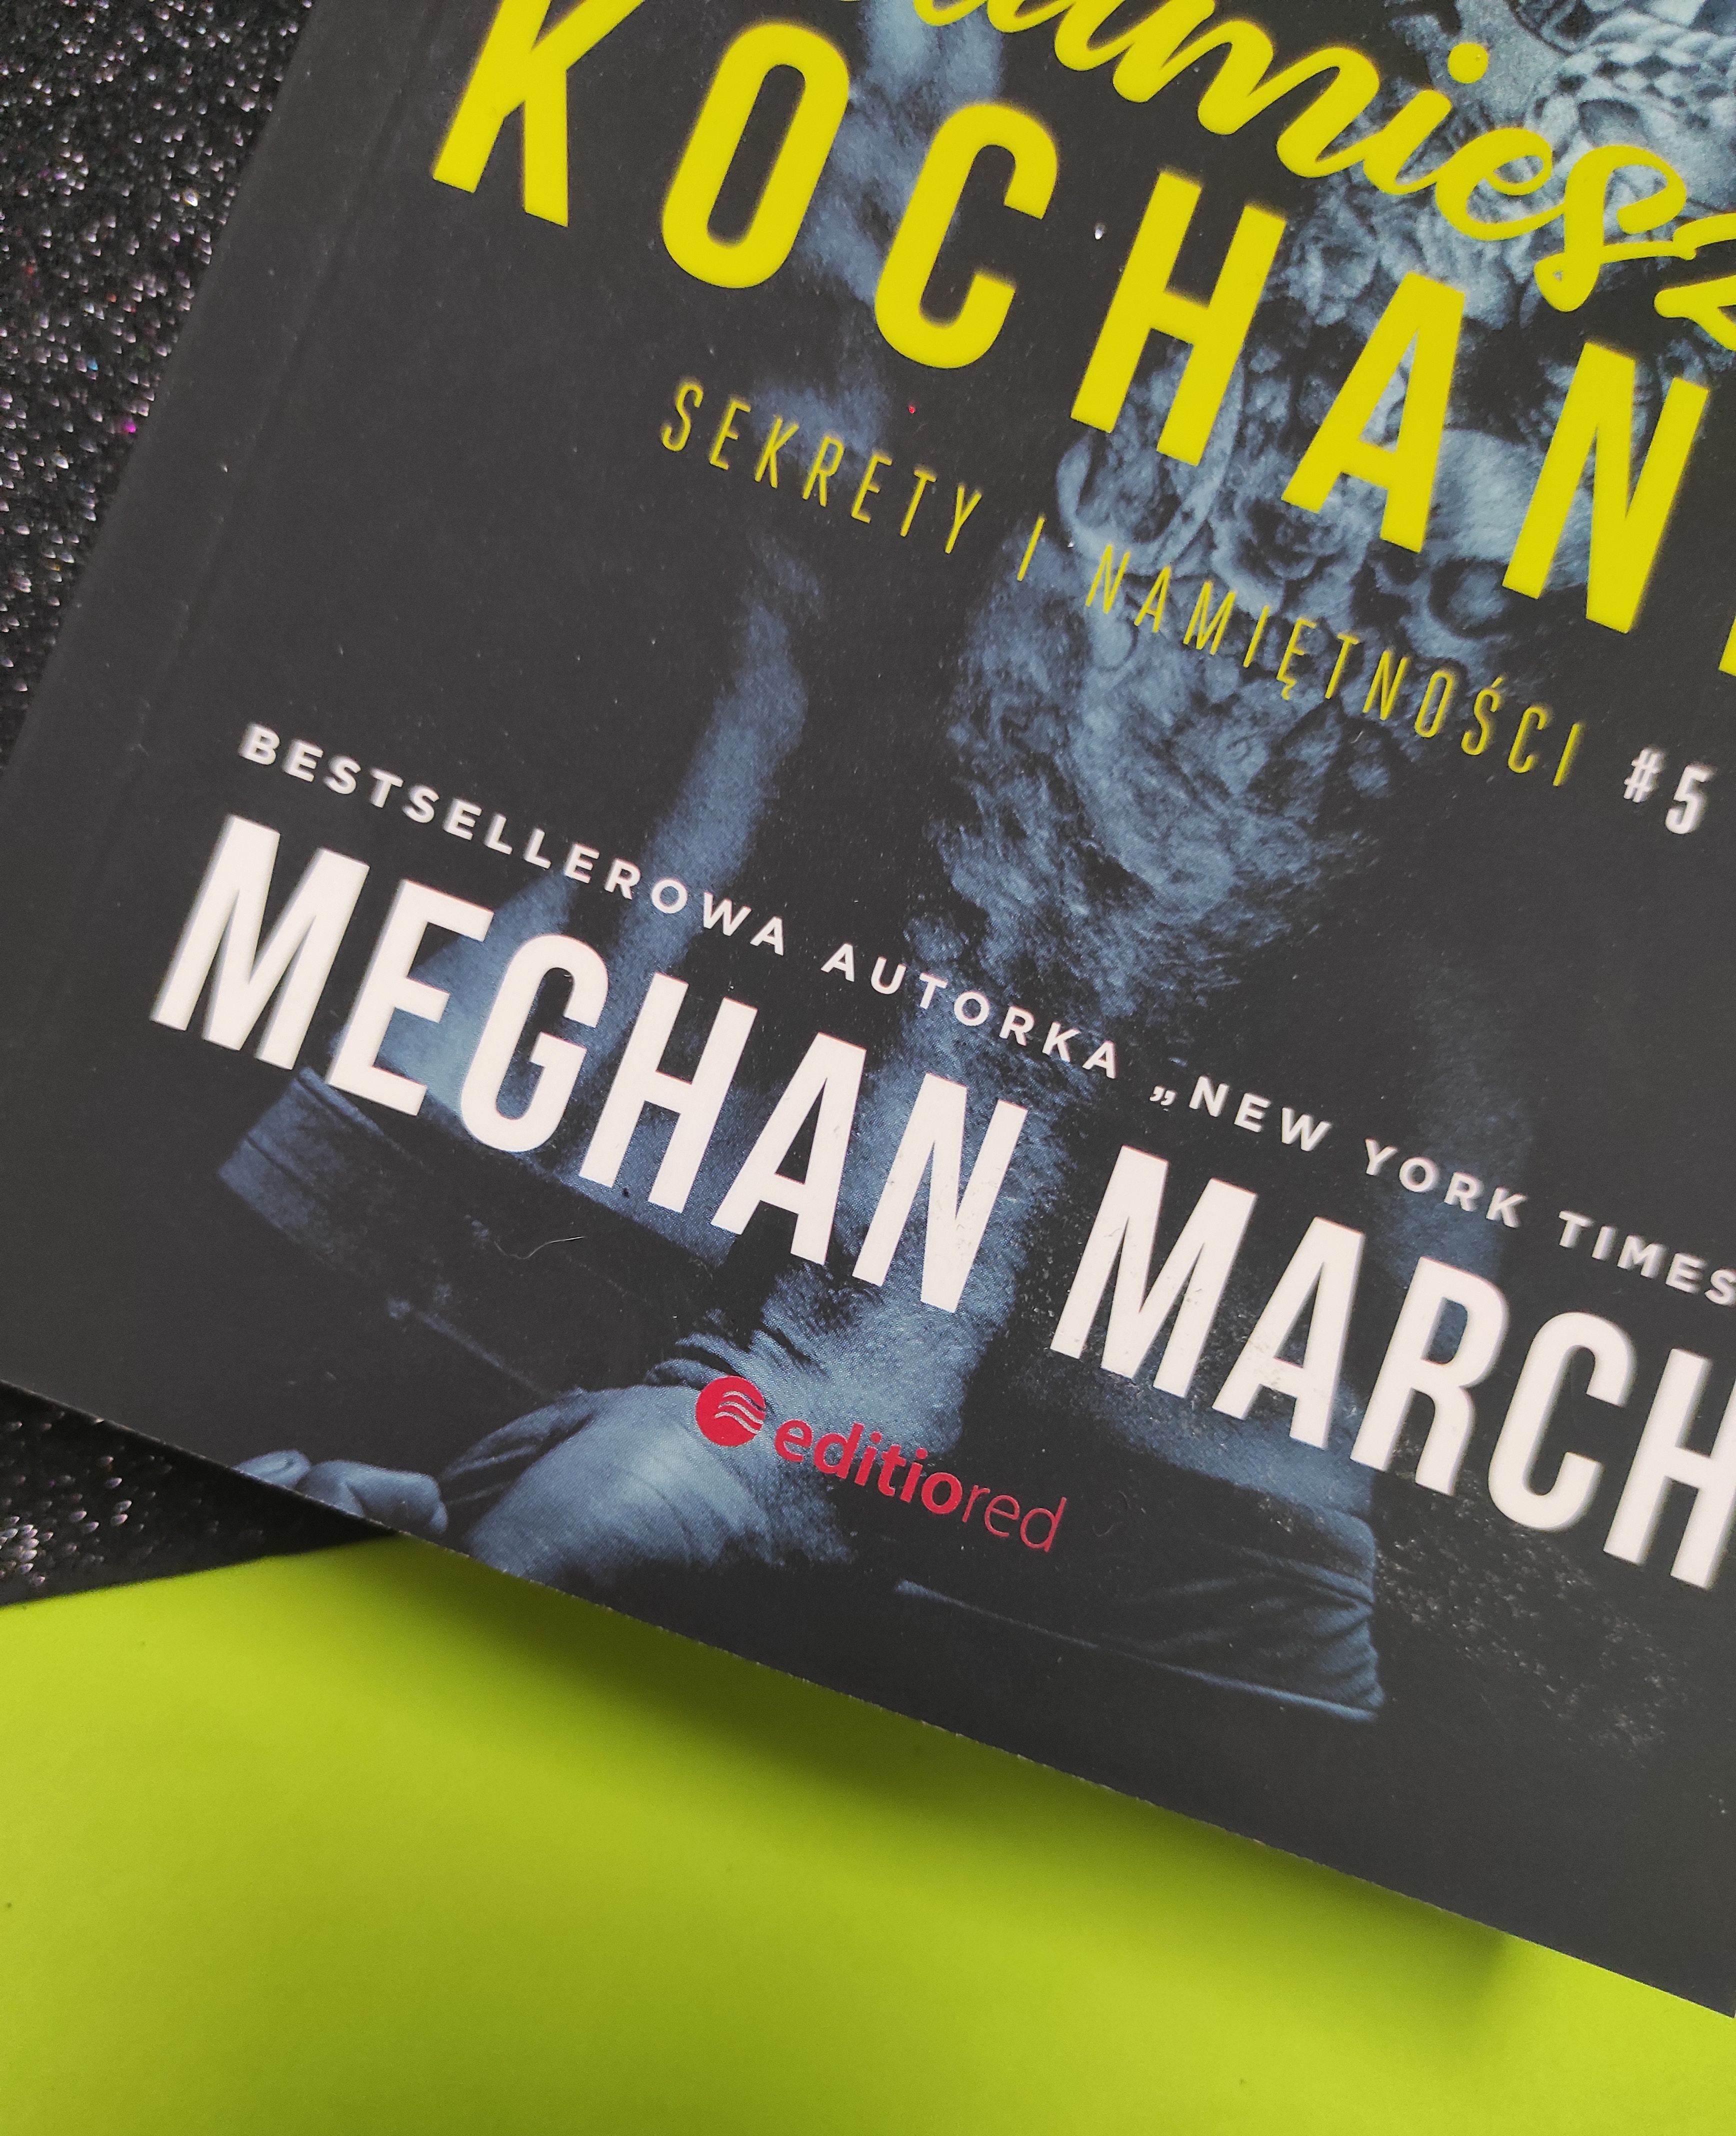 "Kłamiesz, kochanie" Sekrety i namiętności 5 Meghan March - recenzja